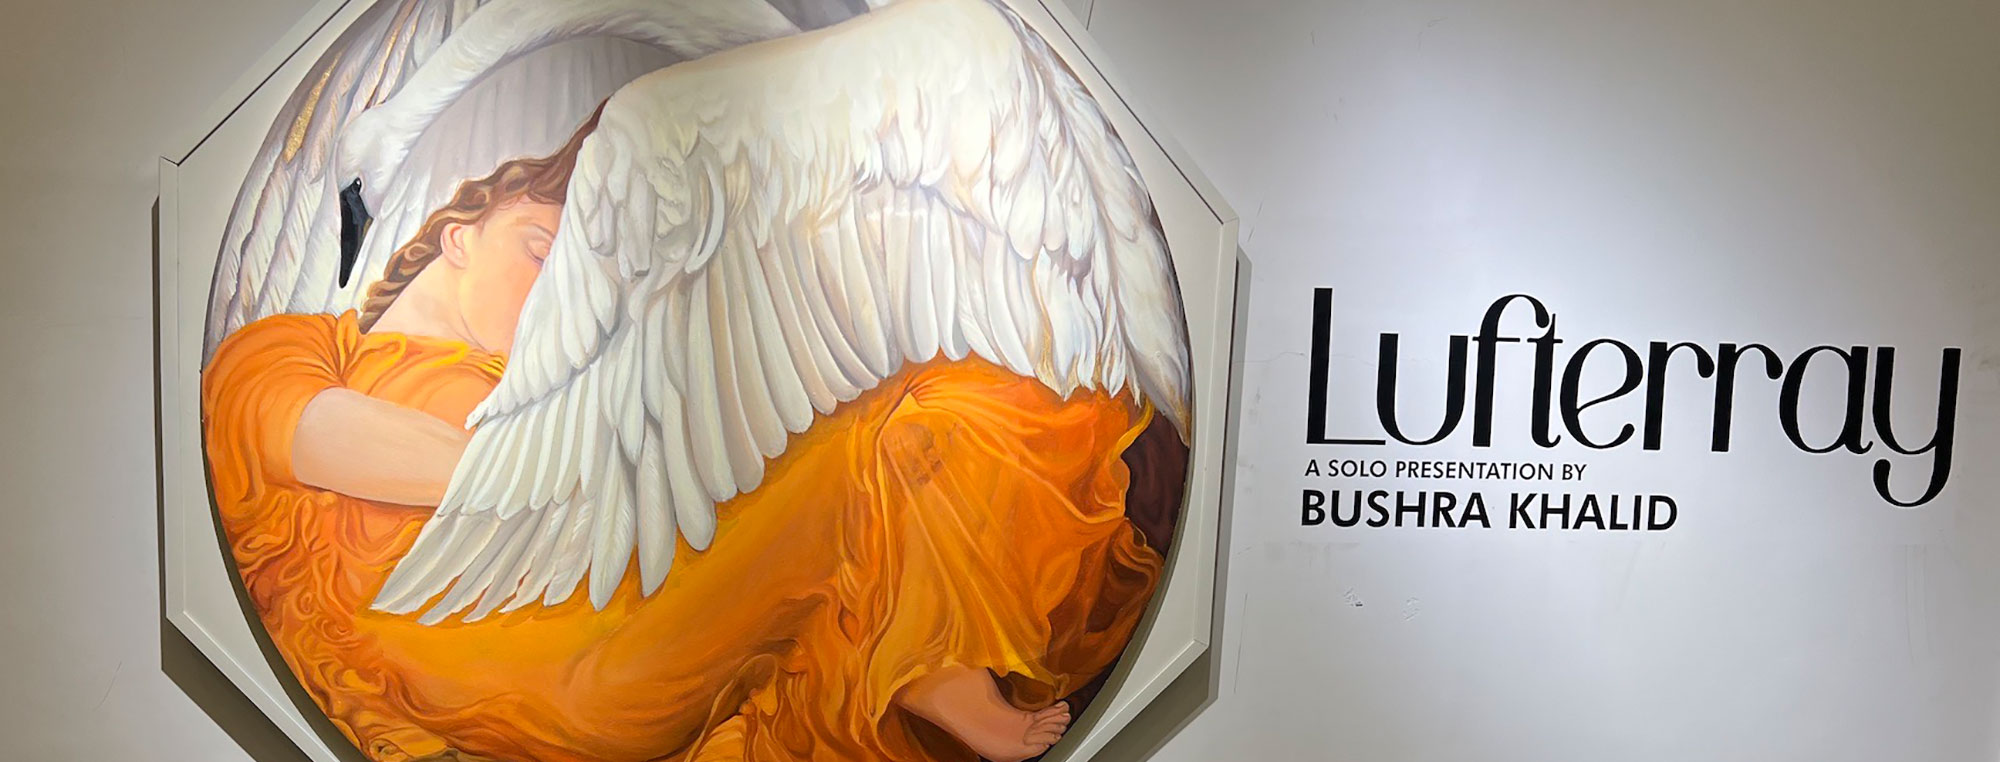 ‘Lufterray’: Art Exhibition Interview with Bushra Khalid